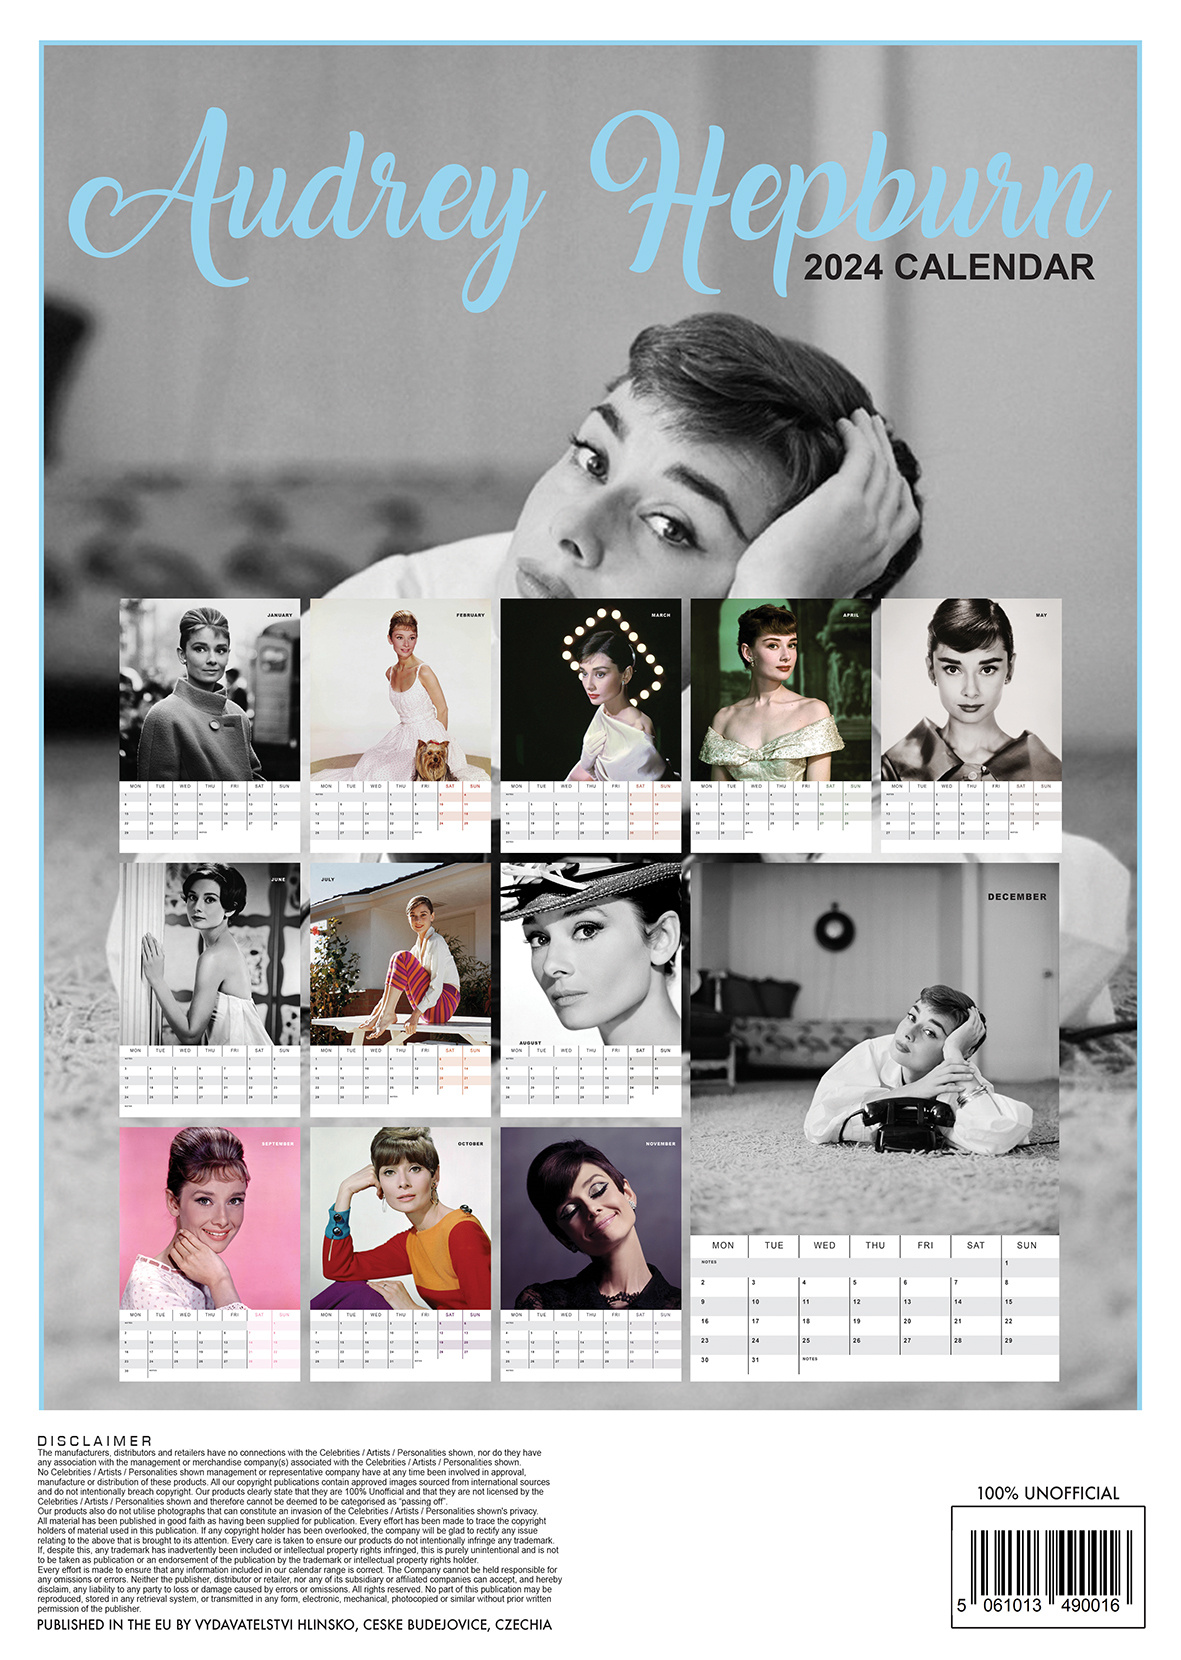 Comprar Audrey Hepburn Calendario 2024 A3? Rápido y fácil online